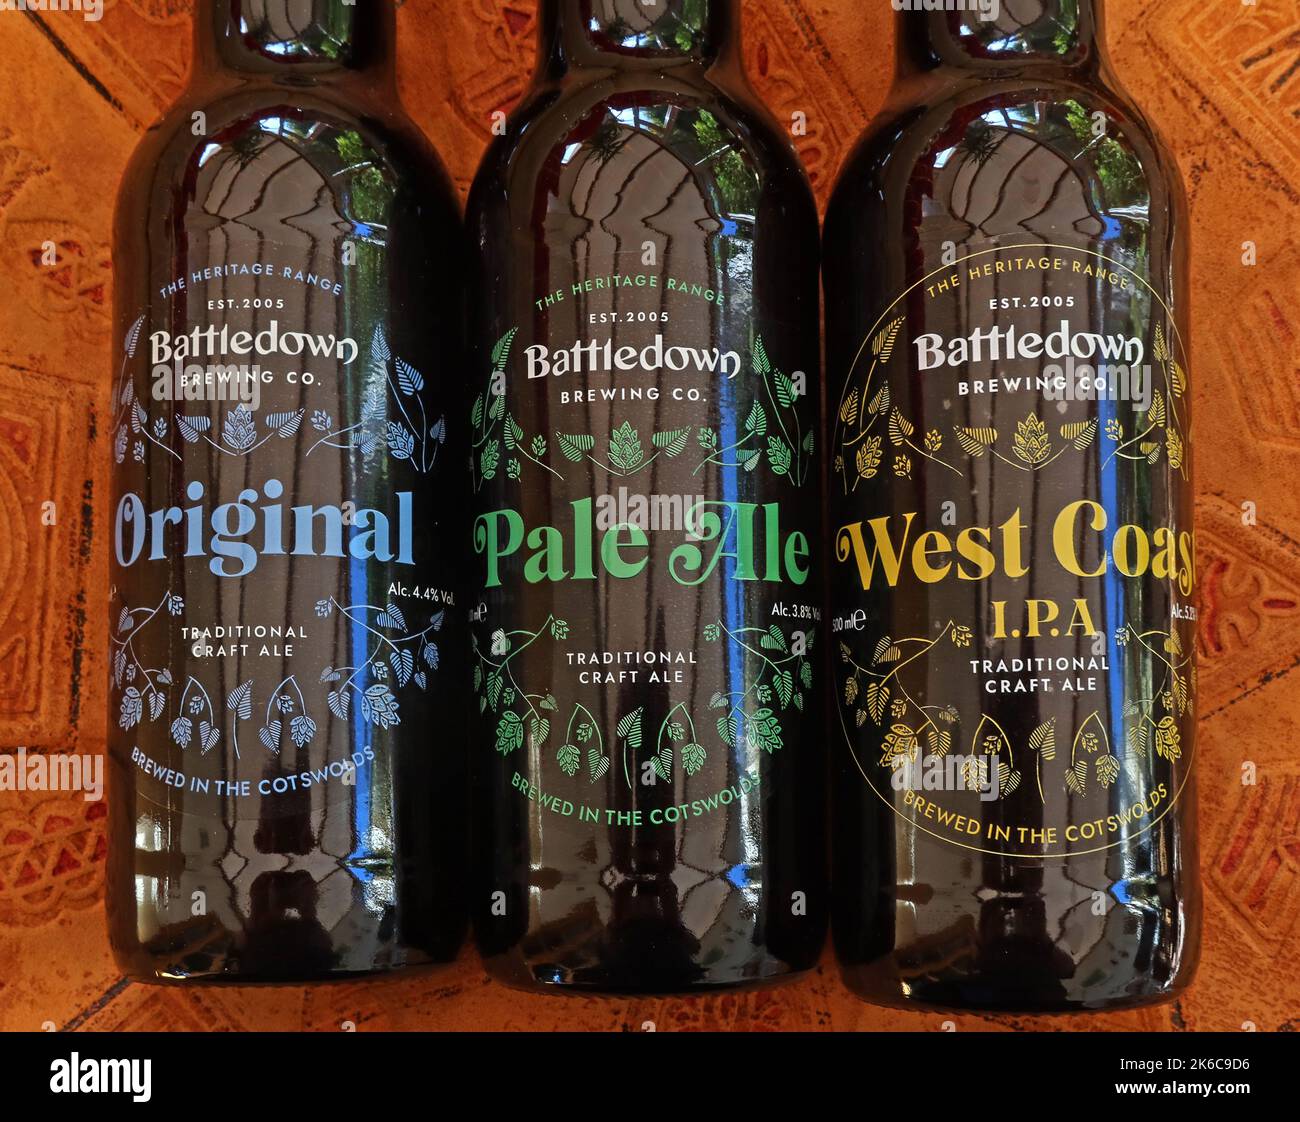 Battledown Brewing Co, qualità artigianale in bottiglia, birre da Gloucestershire, Inghilterra sud-occidentale, Regno Unito, originale, pale Ale, Costa occidentale IPA Foto Stock